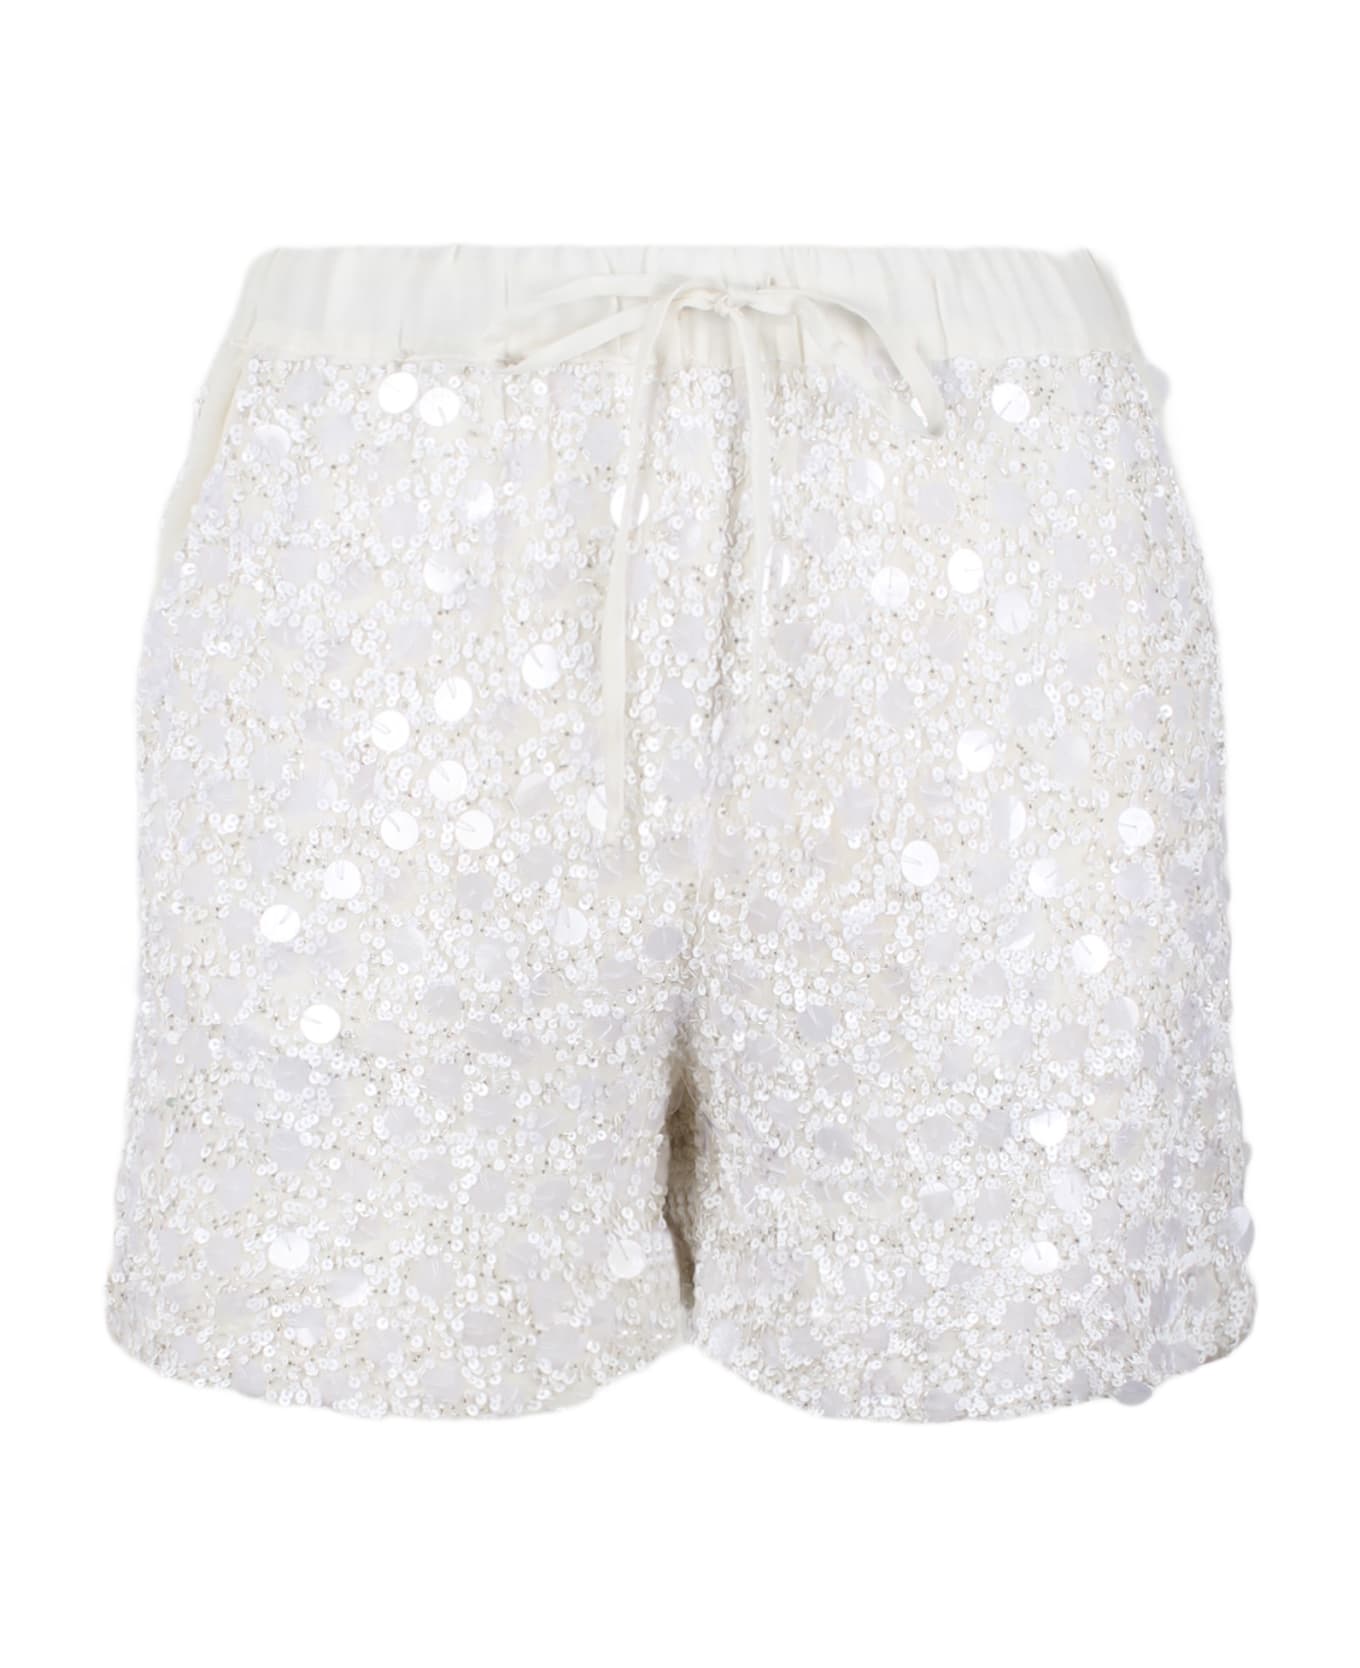 Parosh White Shorts Wtih Sequins - White